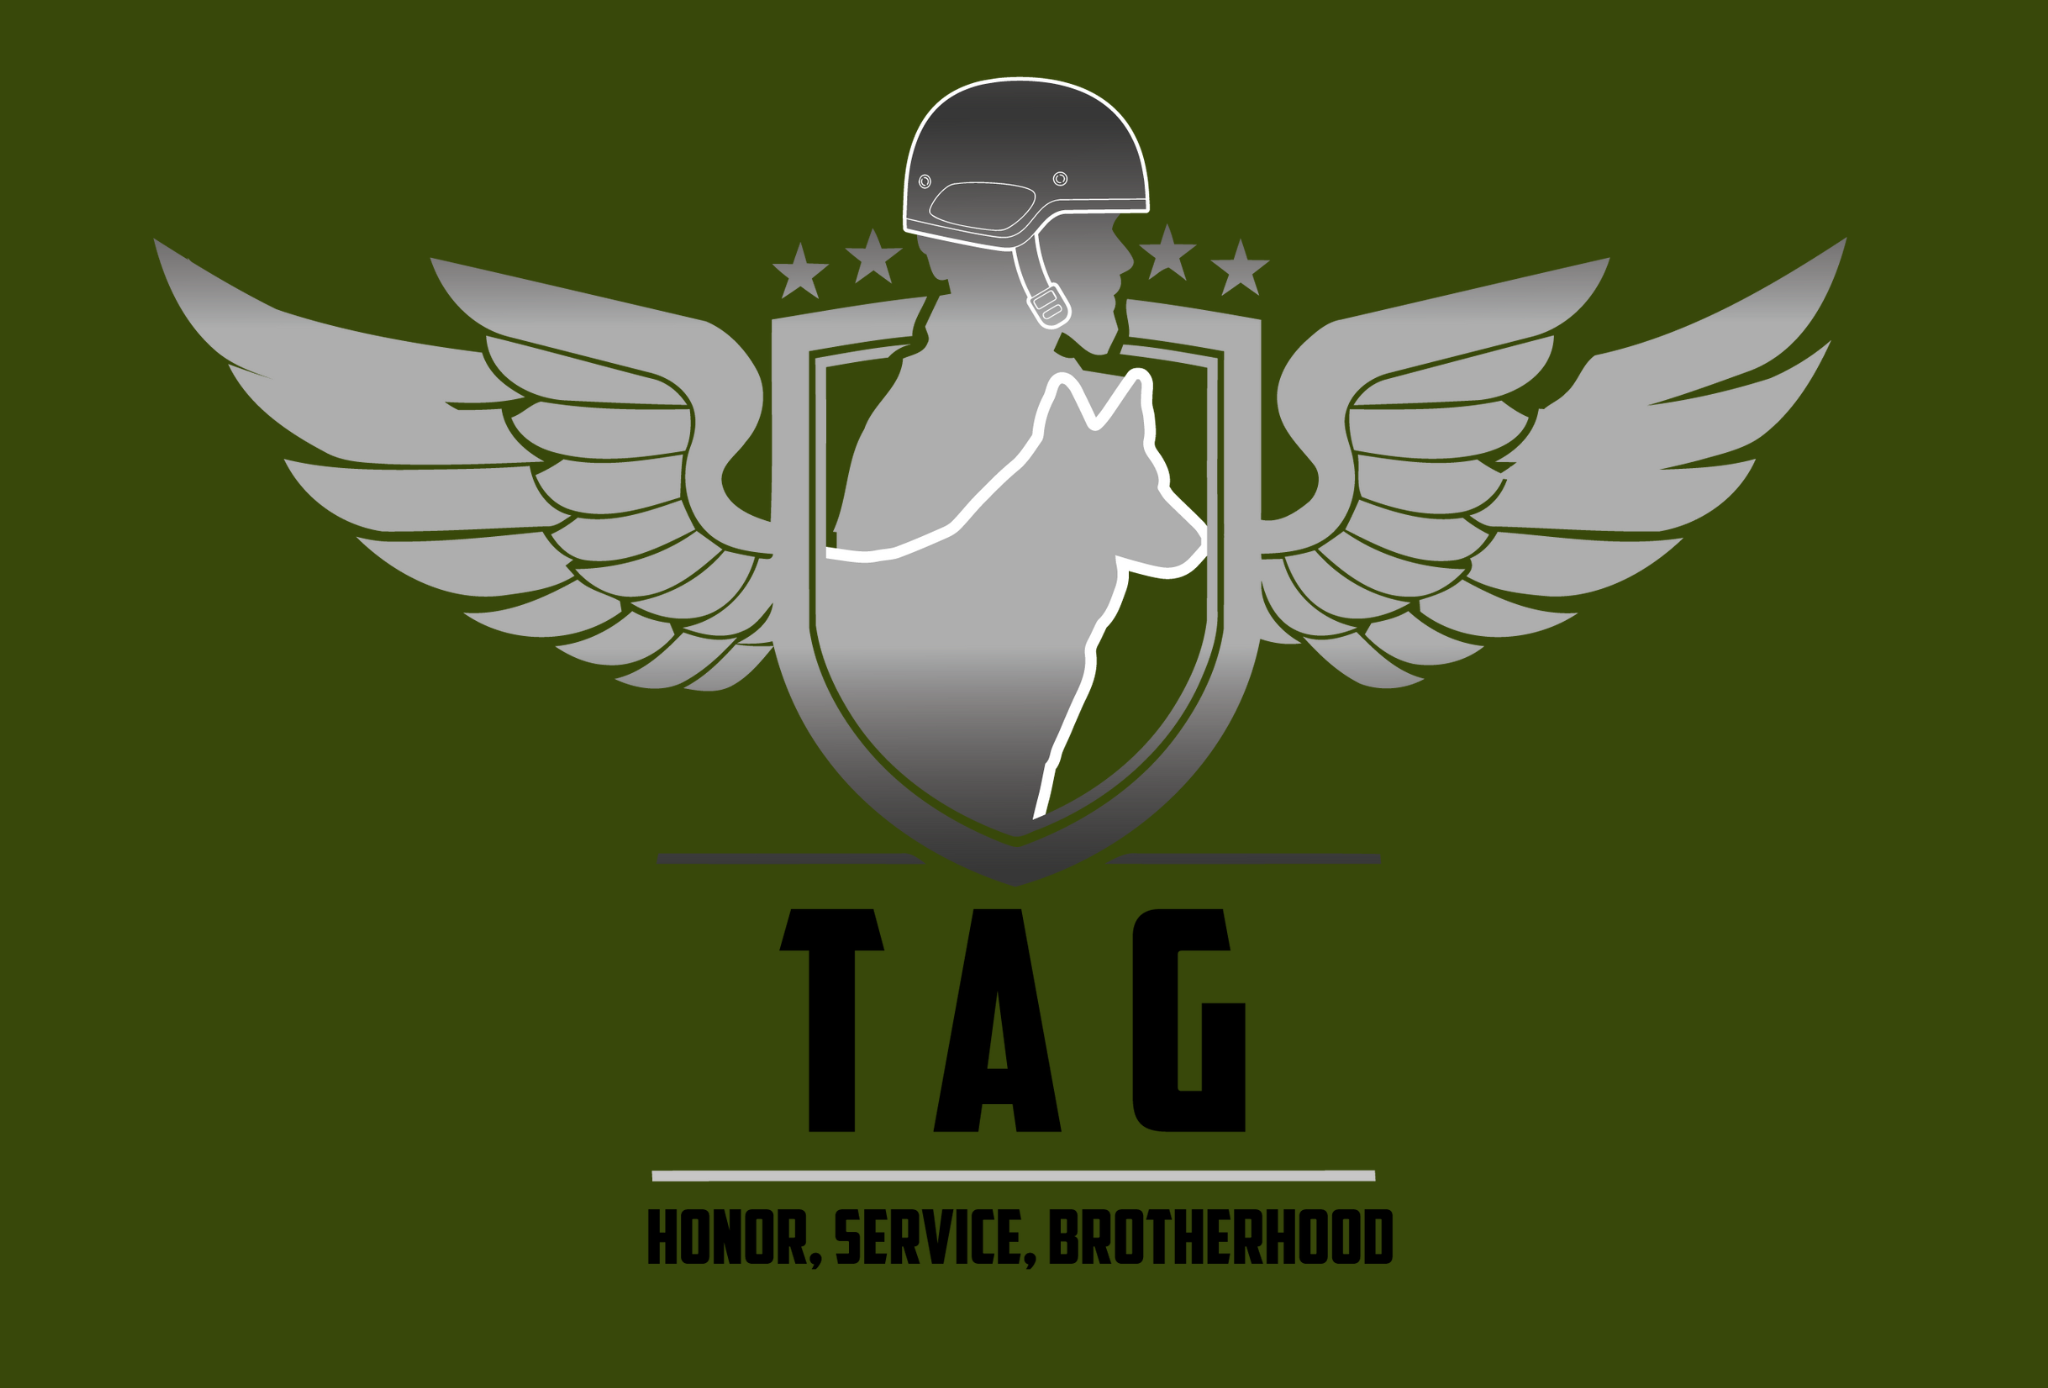 THE TAG LLC